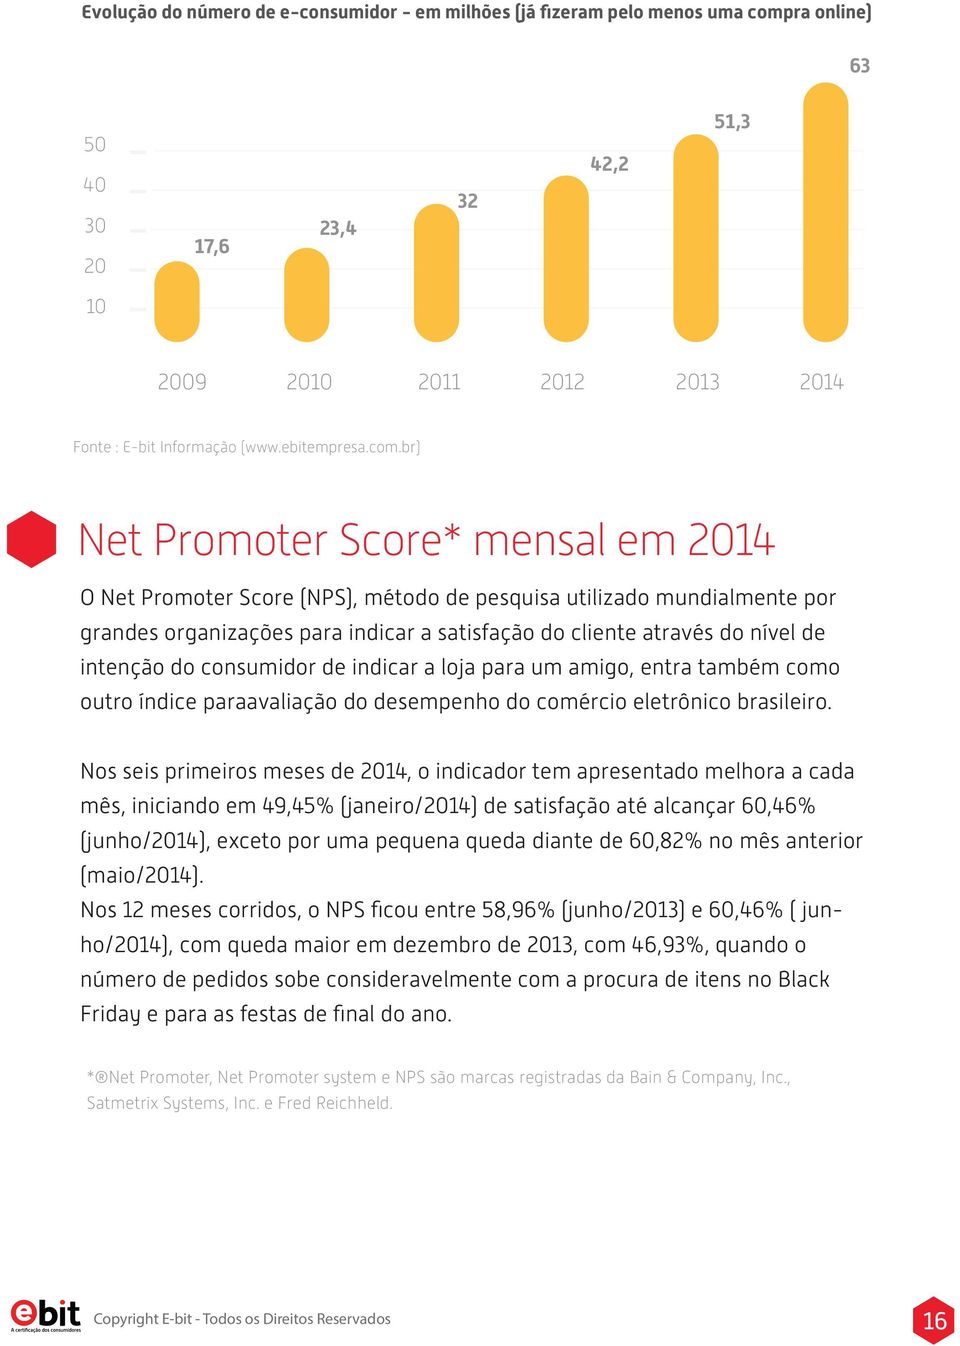 br) Net Promoter Score* mensal em 2014 O Net Promoter Score (NPS), método de pesquisa utilizado mundialmente por grandes organizações para indicar a satisfação do cliente através do nível de intenção